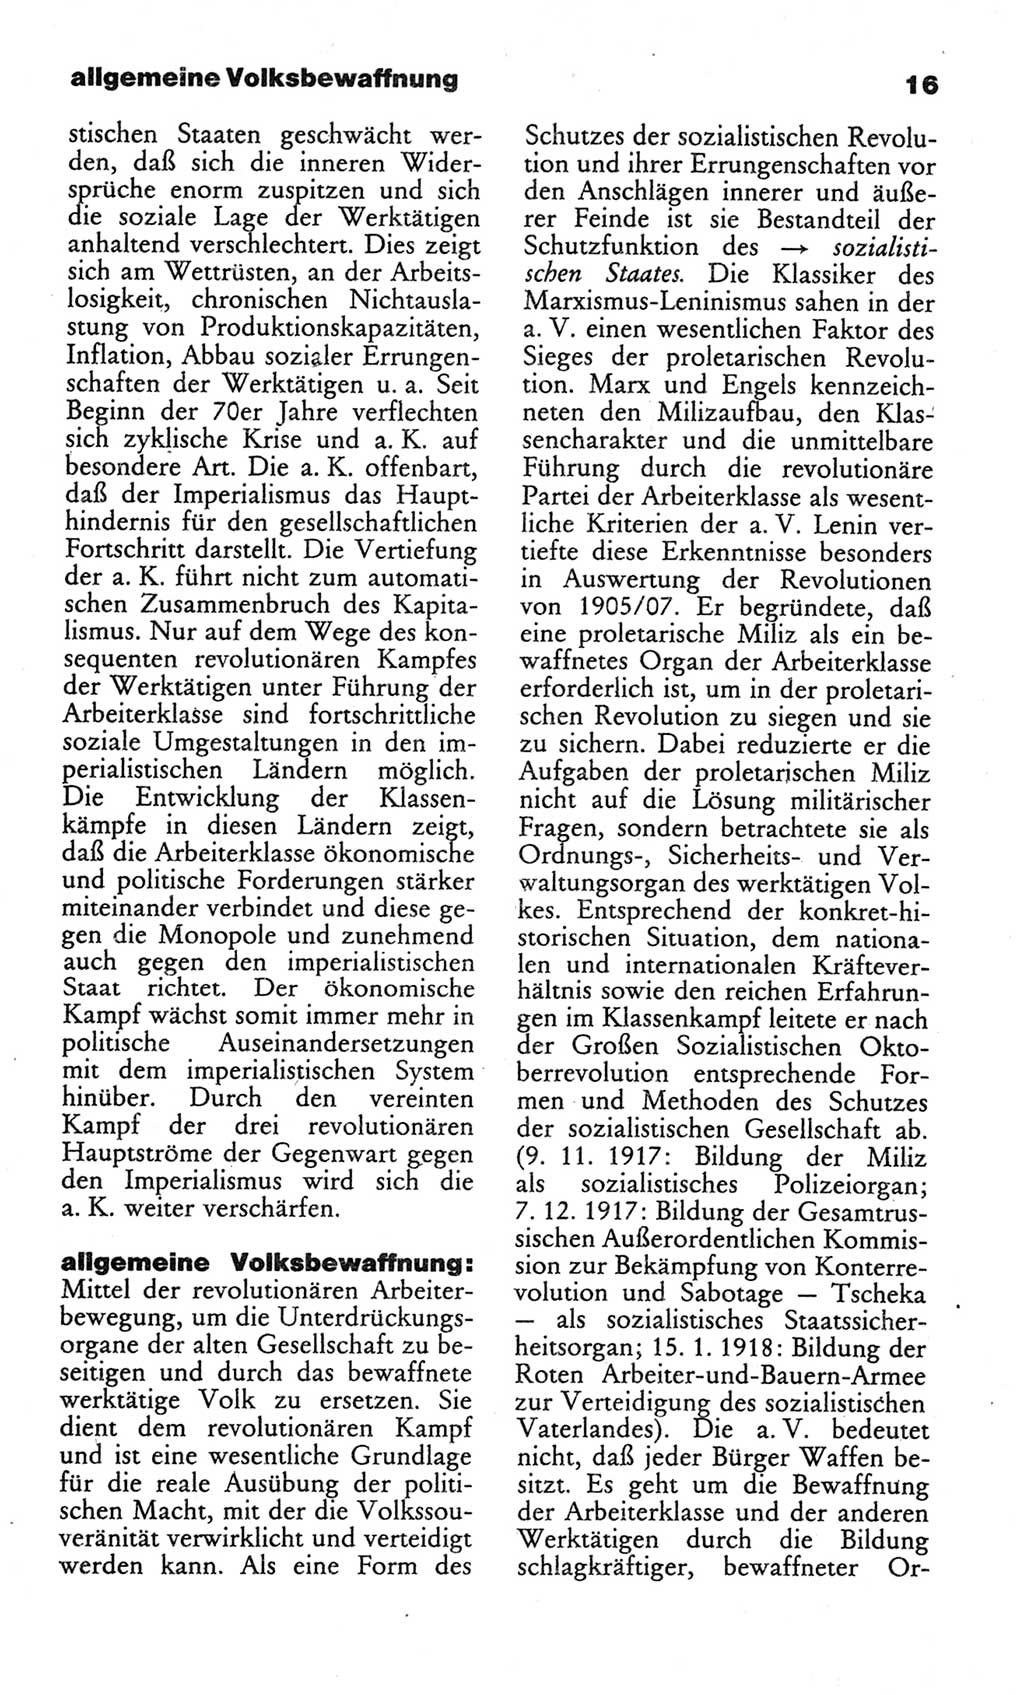 Wörterbuch des wissenschaftlichen Kommunismus [Deutsche Demokratische Republik (DDR)] 1982, Seite 16 (Wb. wiss. Komm. DDR 1982, S. 16)